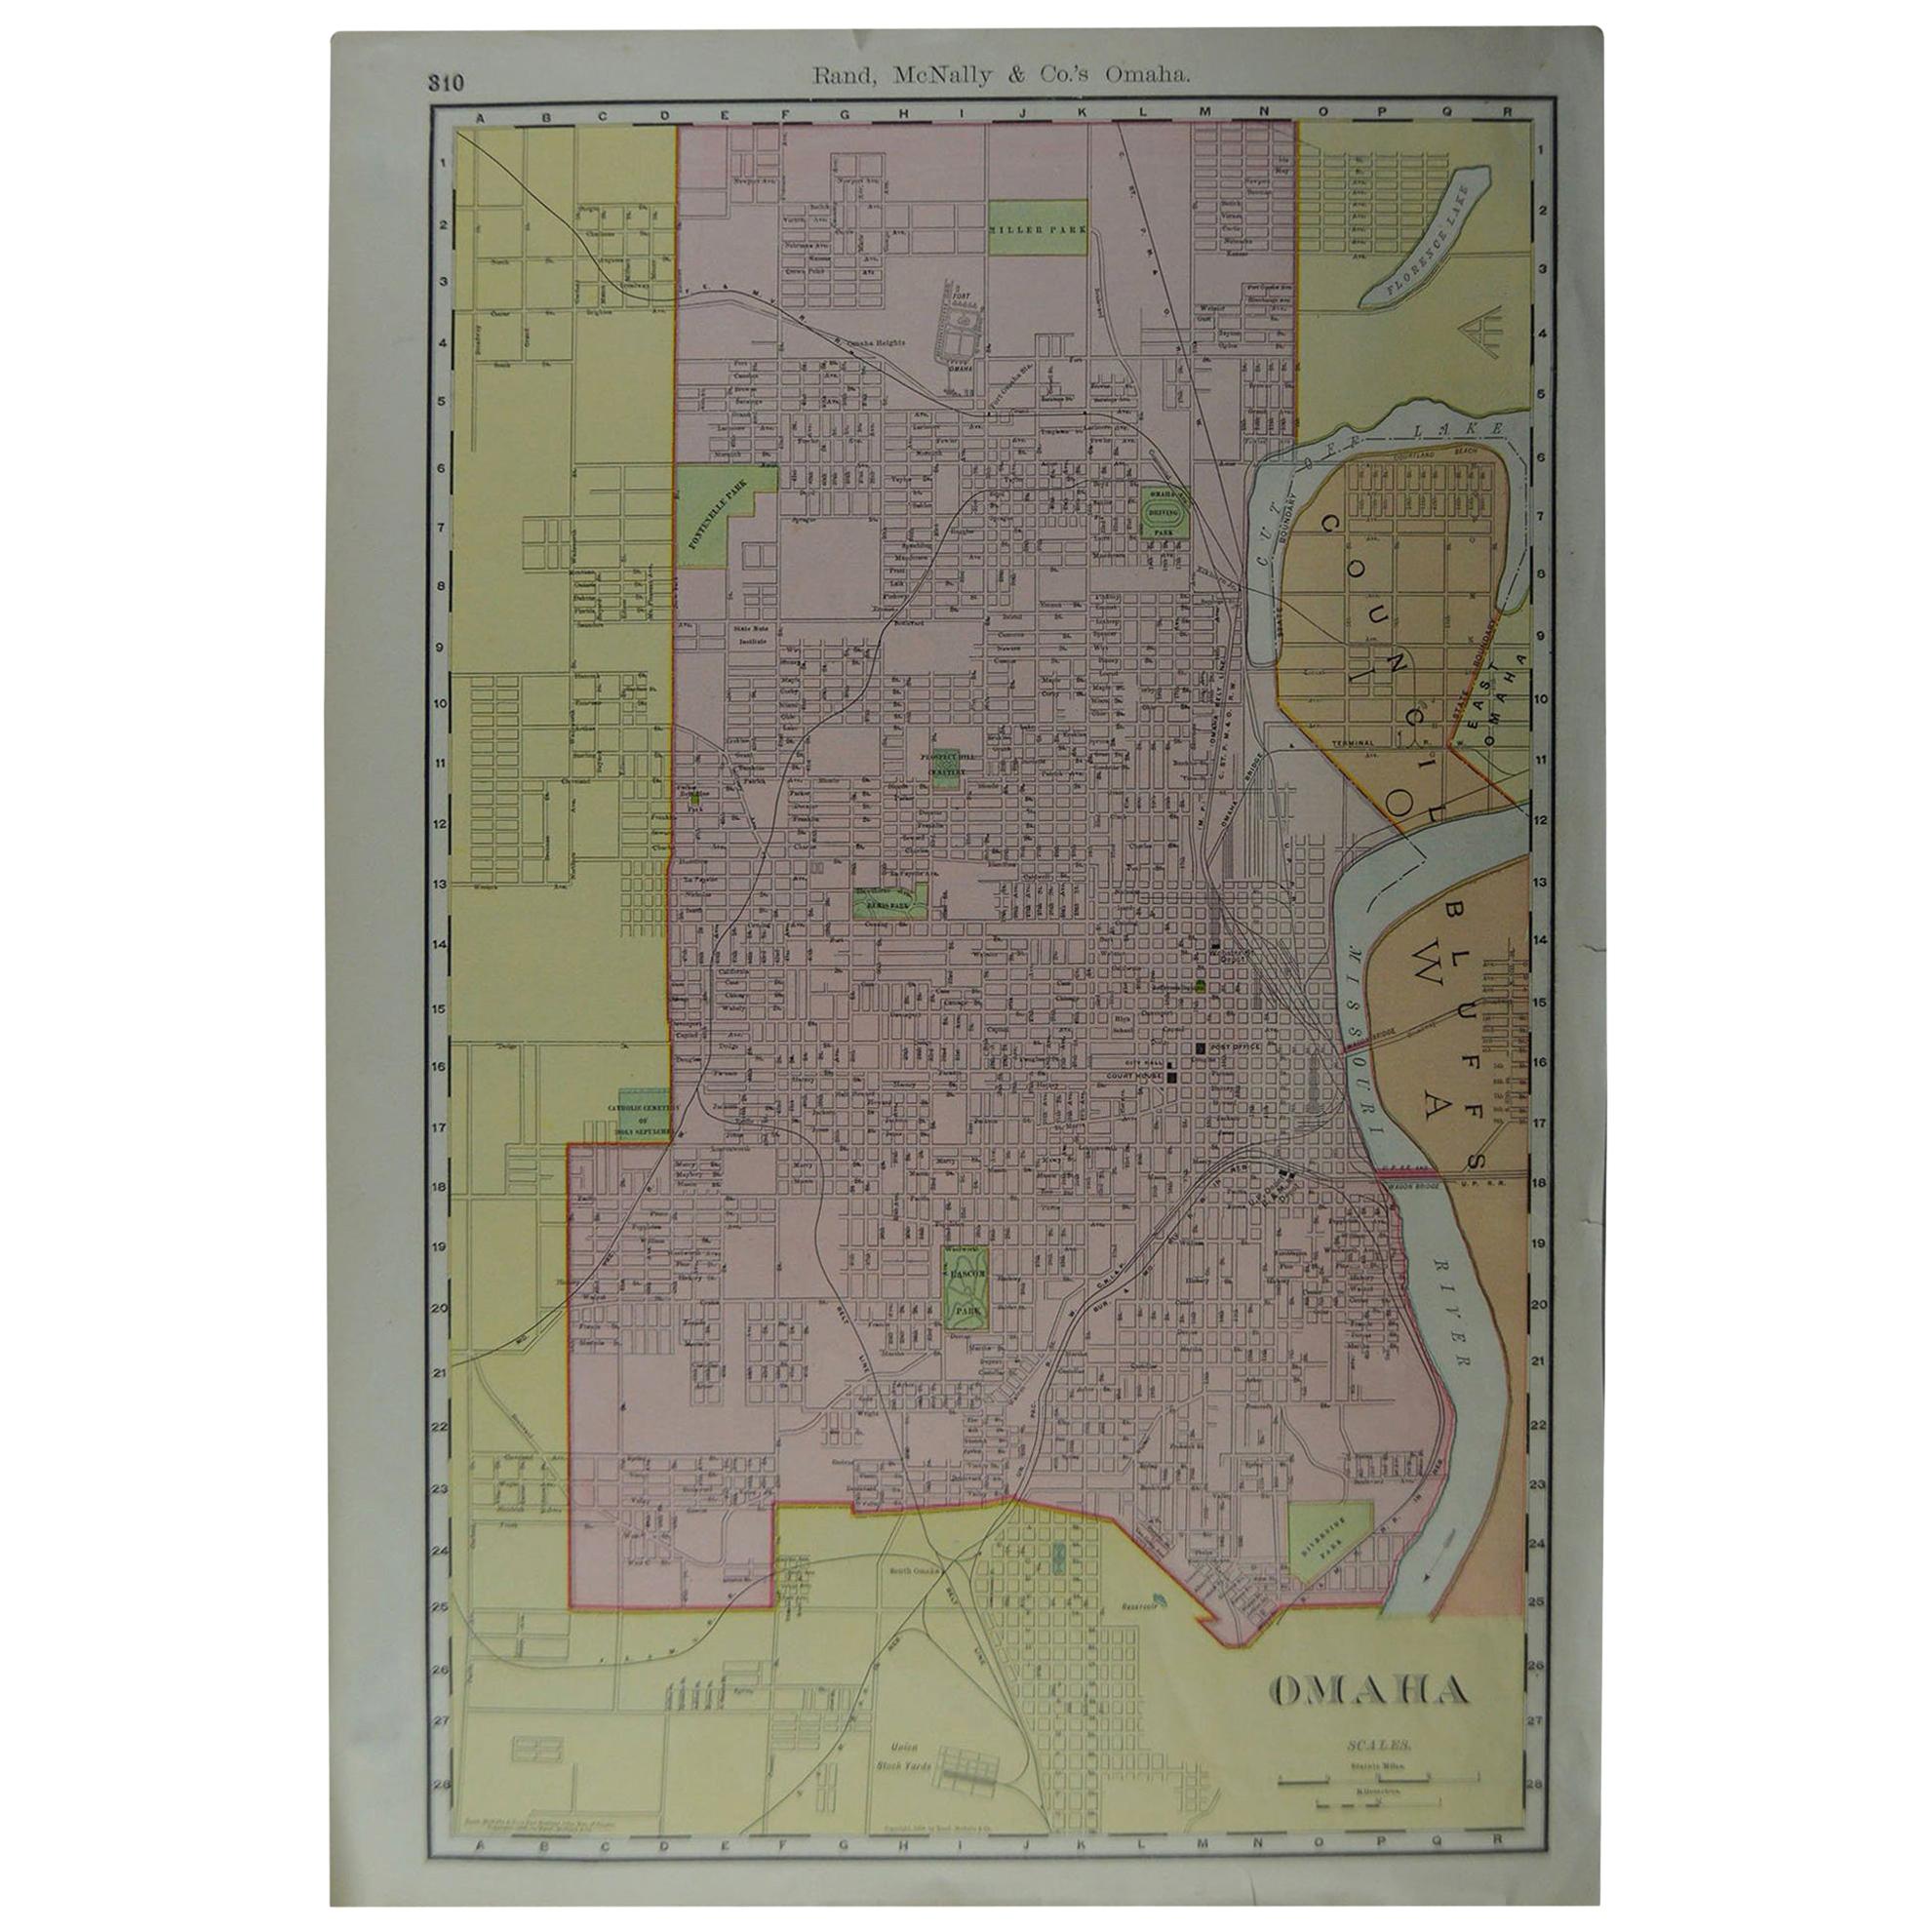 Original Antique City Plan of Omaha, Nebraska, USA, circa 1900